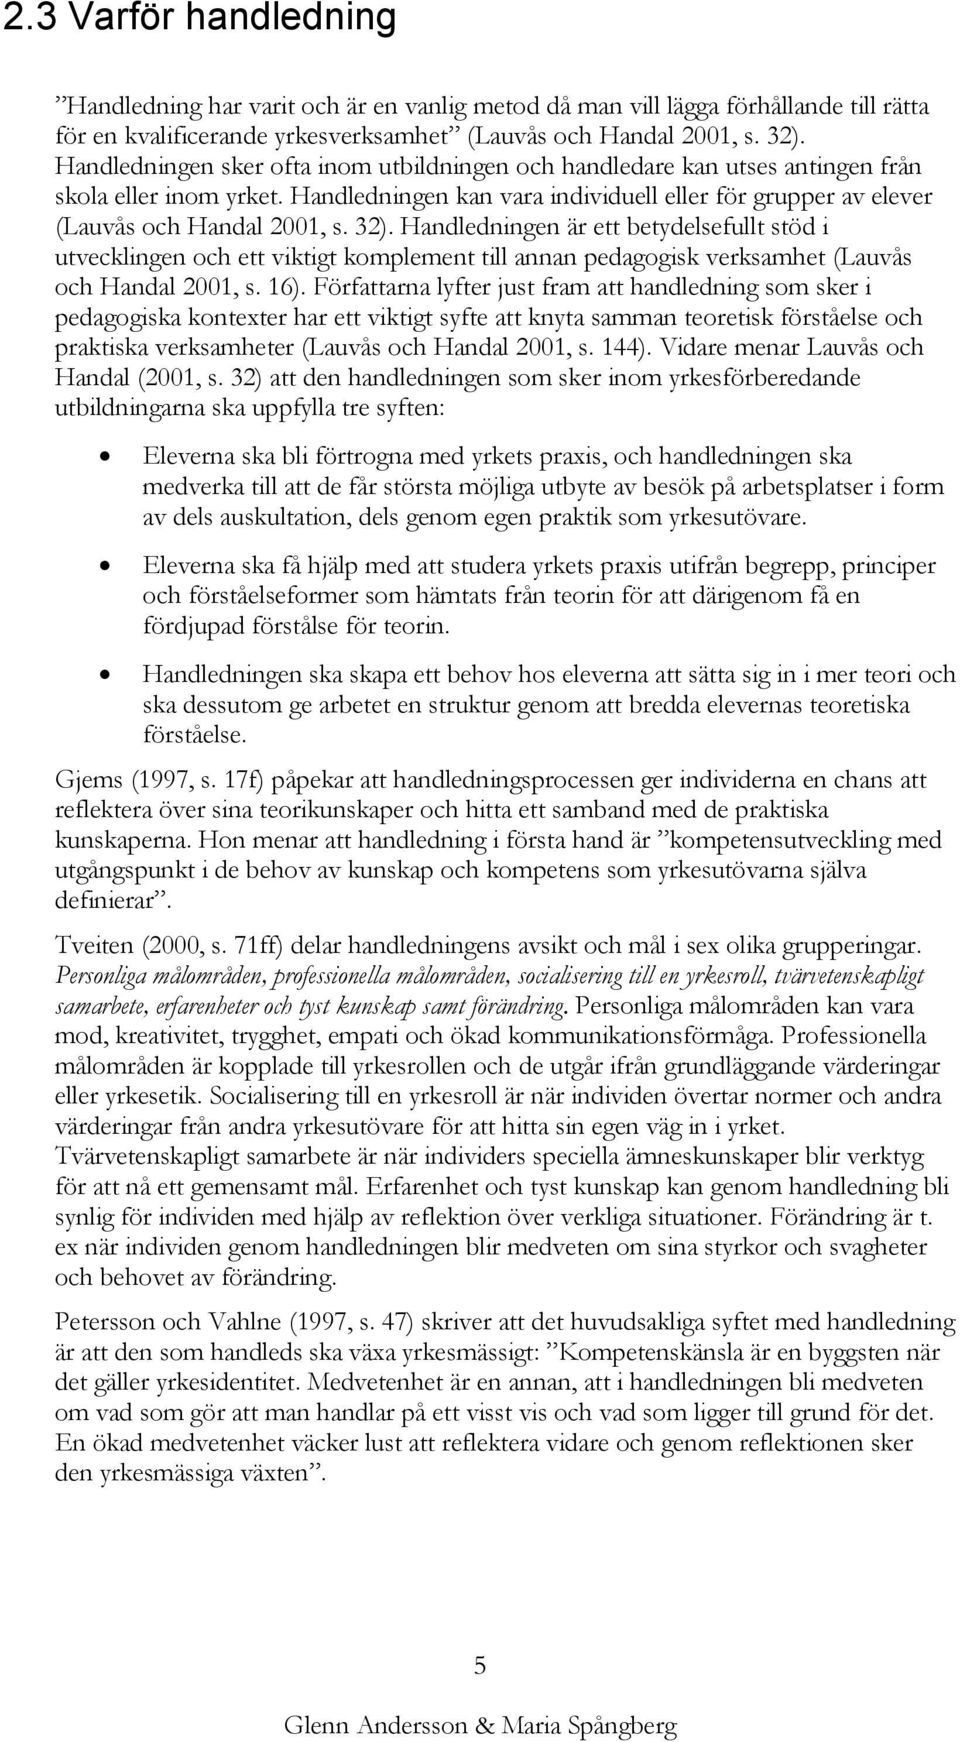 Handledningen är ett betydelsefullt stöd i utvecklingen och ett viktigt komplement till annan pedagogisk verksamhet (Lauvås och Handal 2001, s. 16).